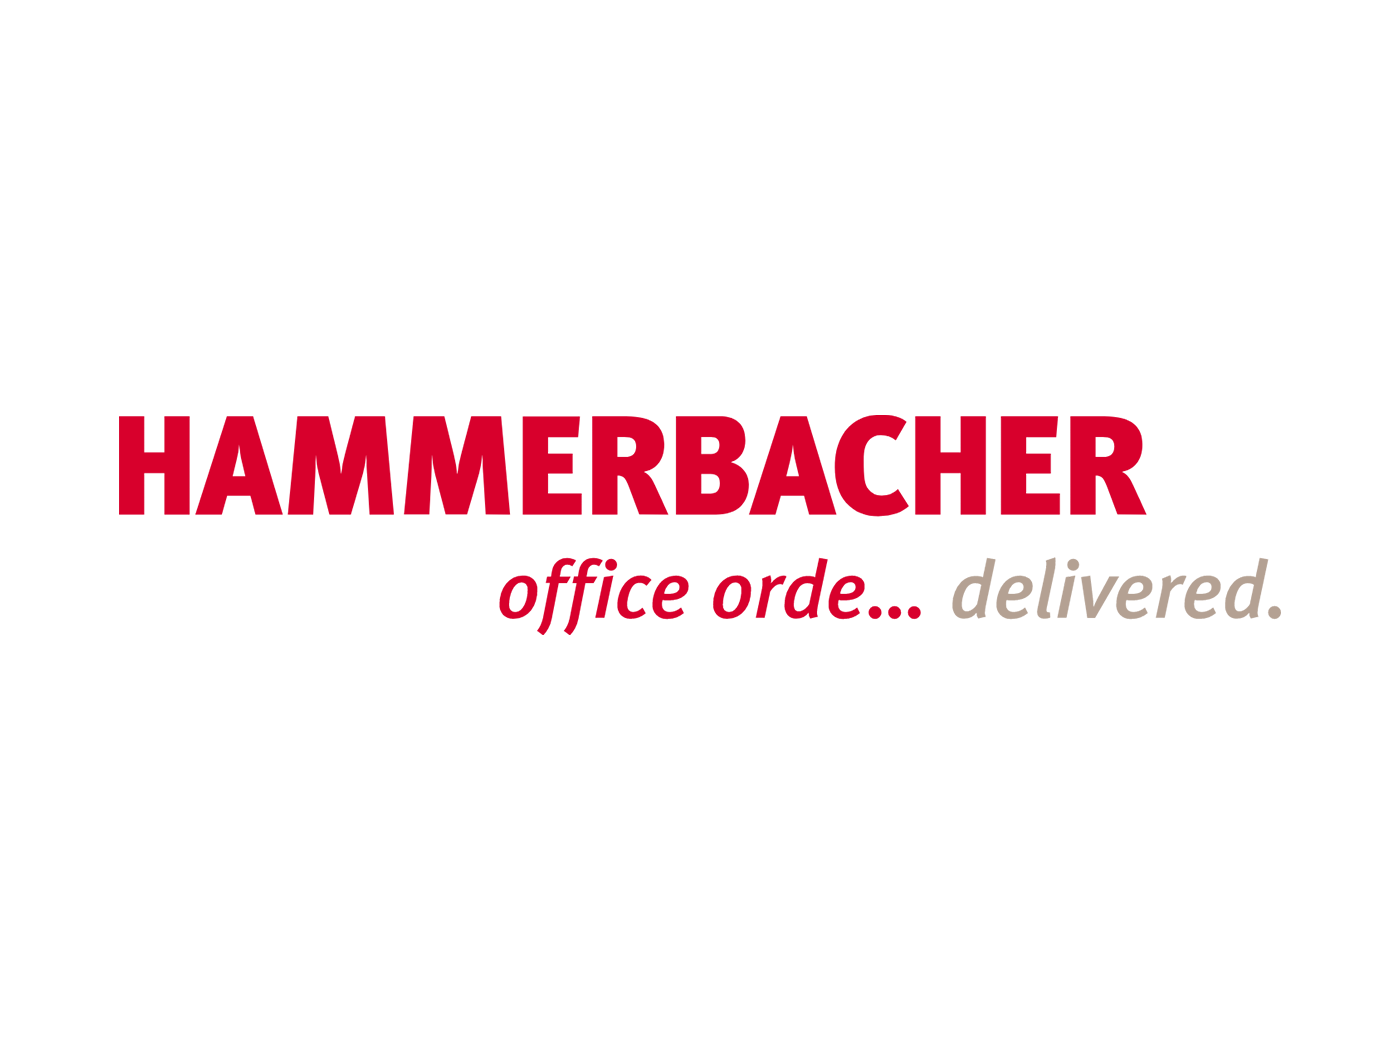 Hammerbacher